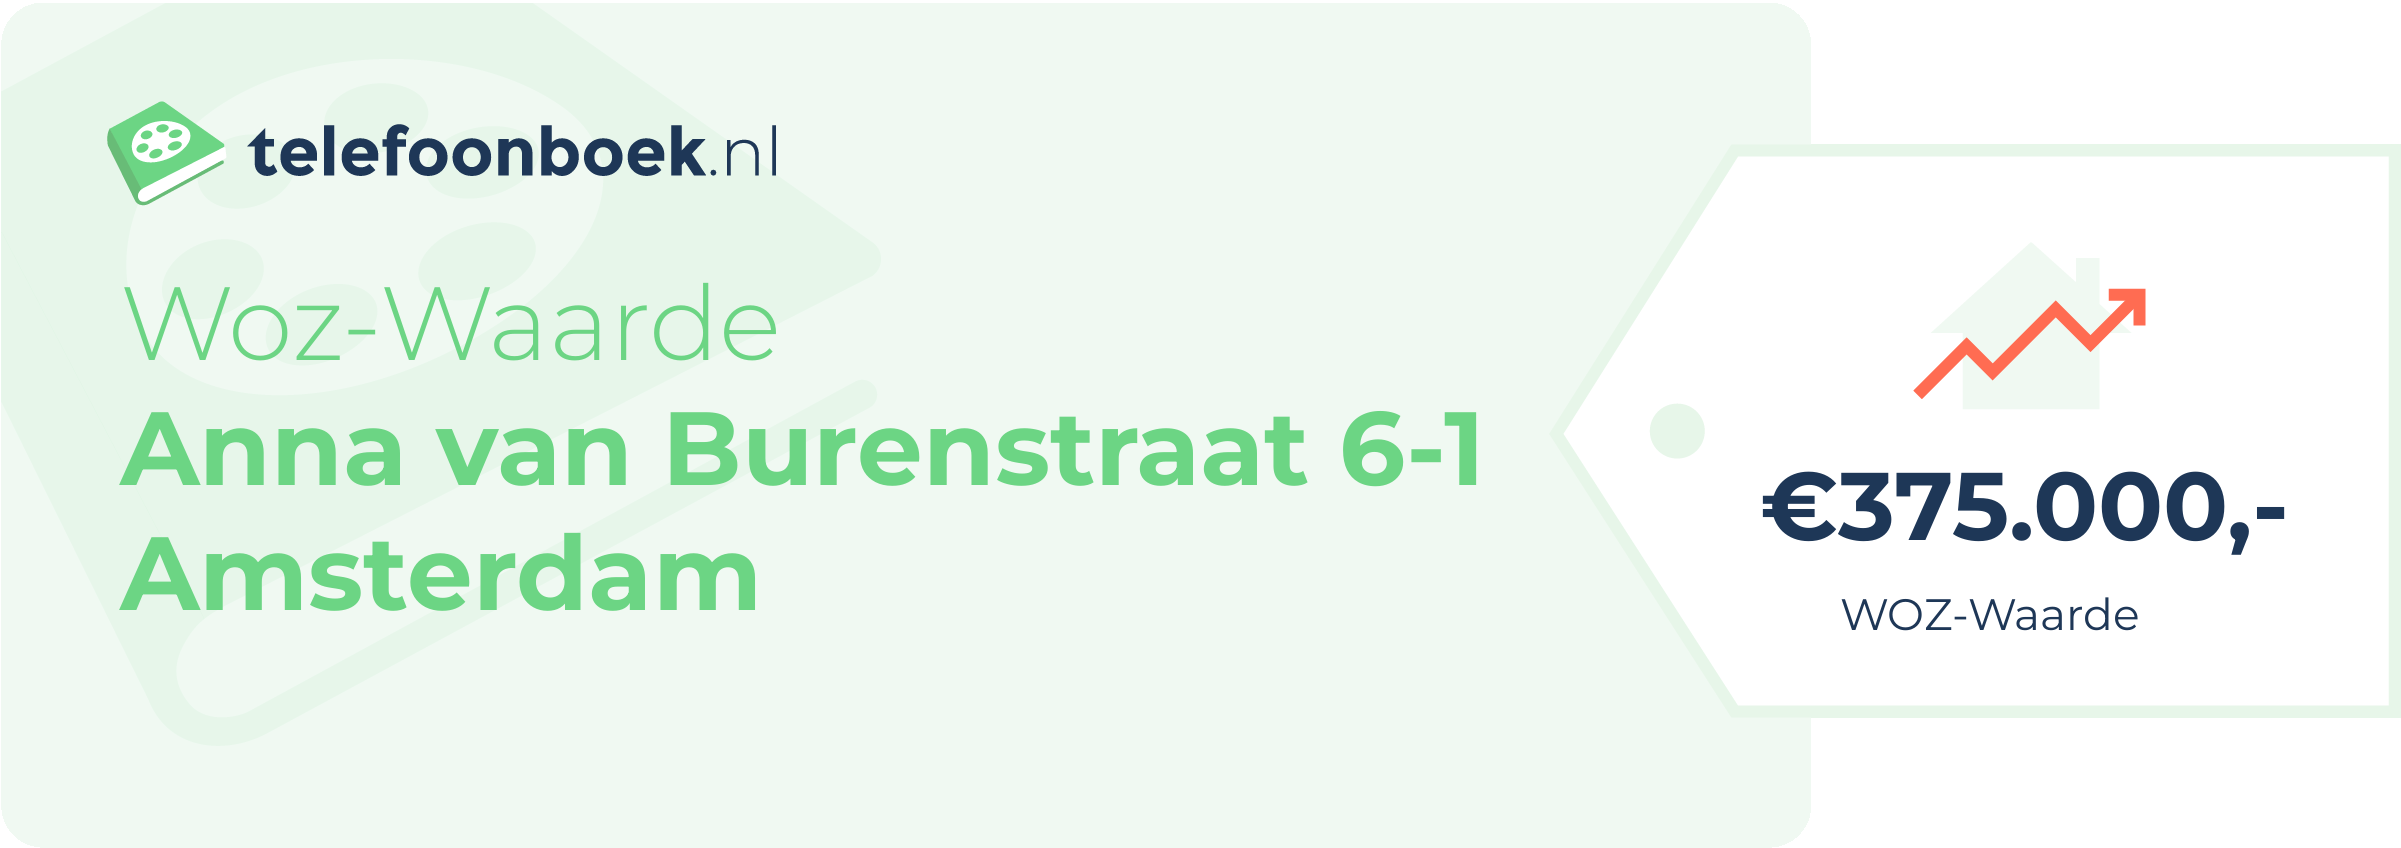 WOZ-waarde Anna Van Burenstraat 6-1 Amsterdam